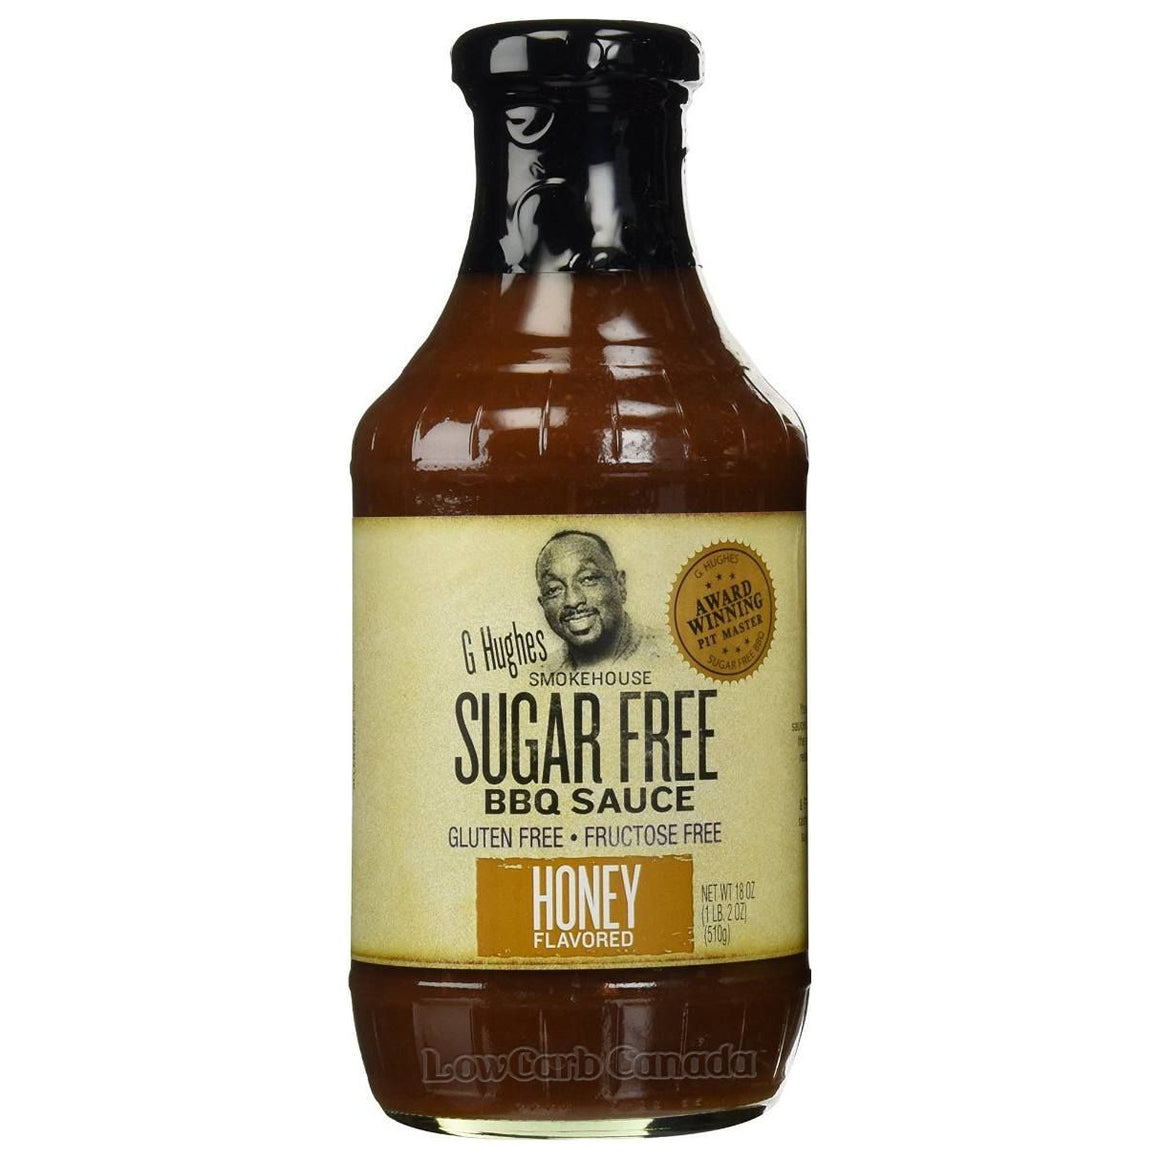 G Hughes Smokehouse - Sugar Free BBQ Sauce - Honey - 18 oz. - Low Carb Canada